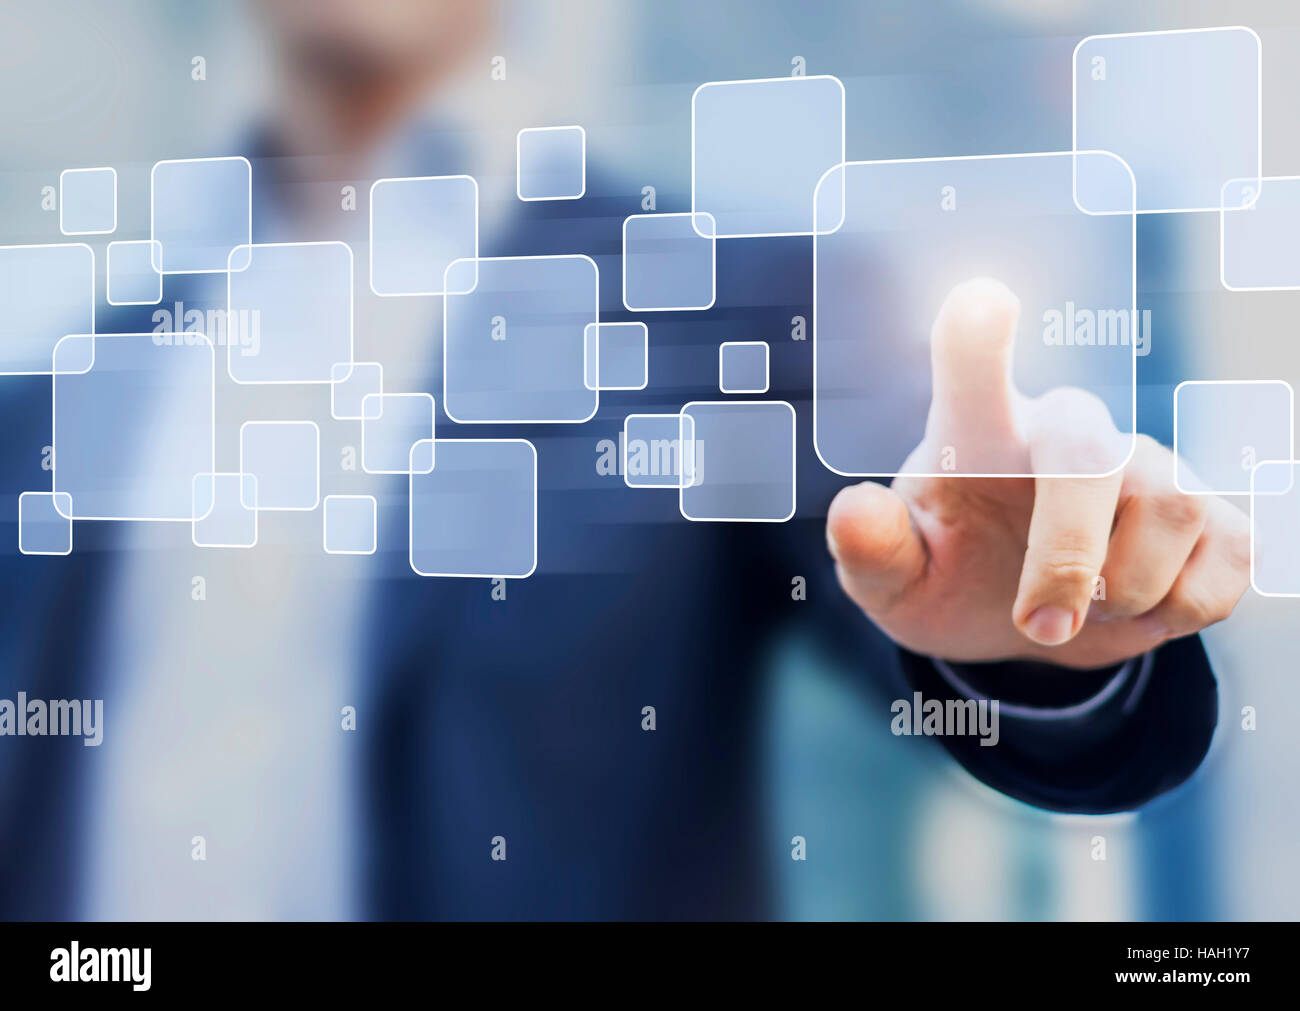 Abstract concept d'entreprise, homme d'affaires de toucher un bouton sur une interface virtuelle, de la technologie Banque D'Images